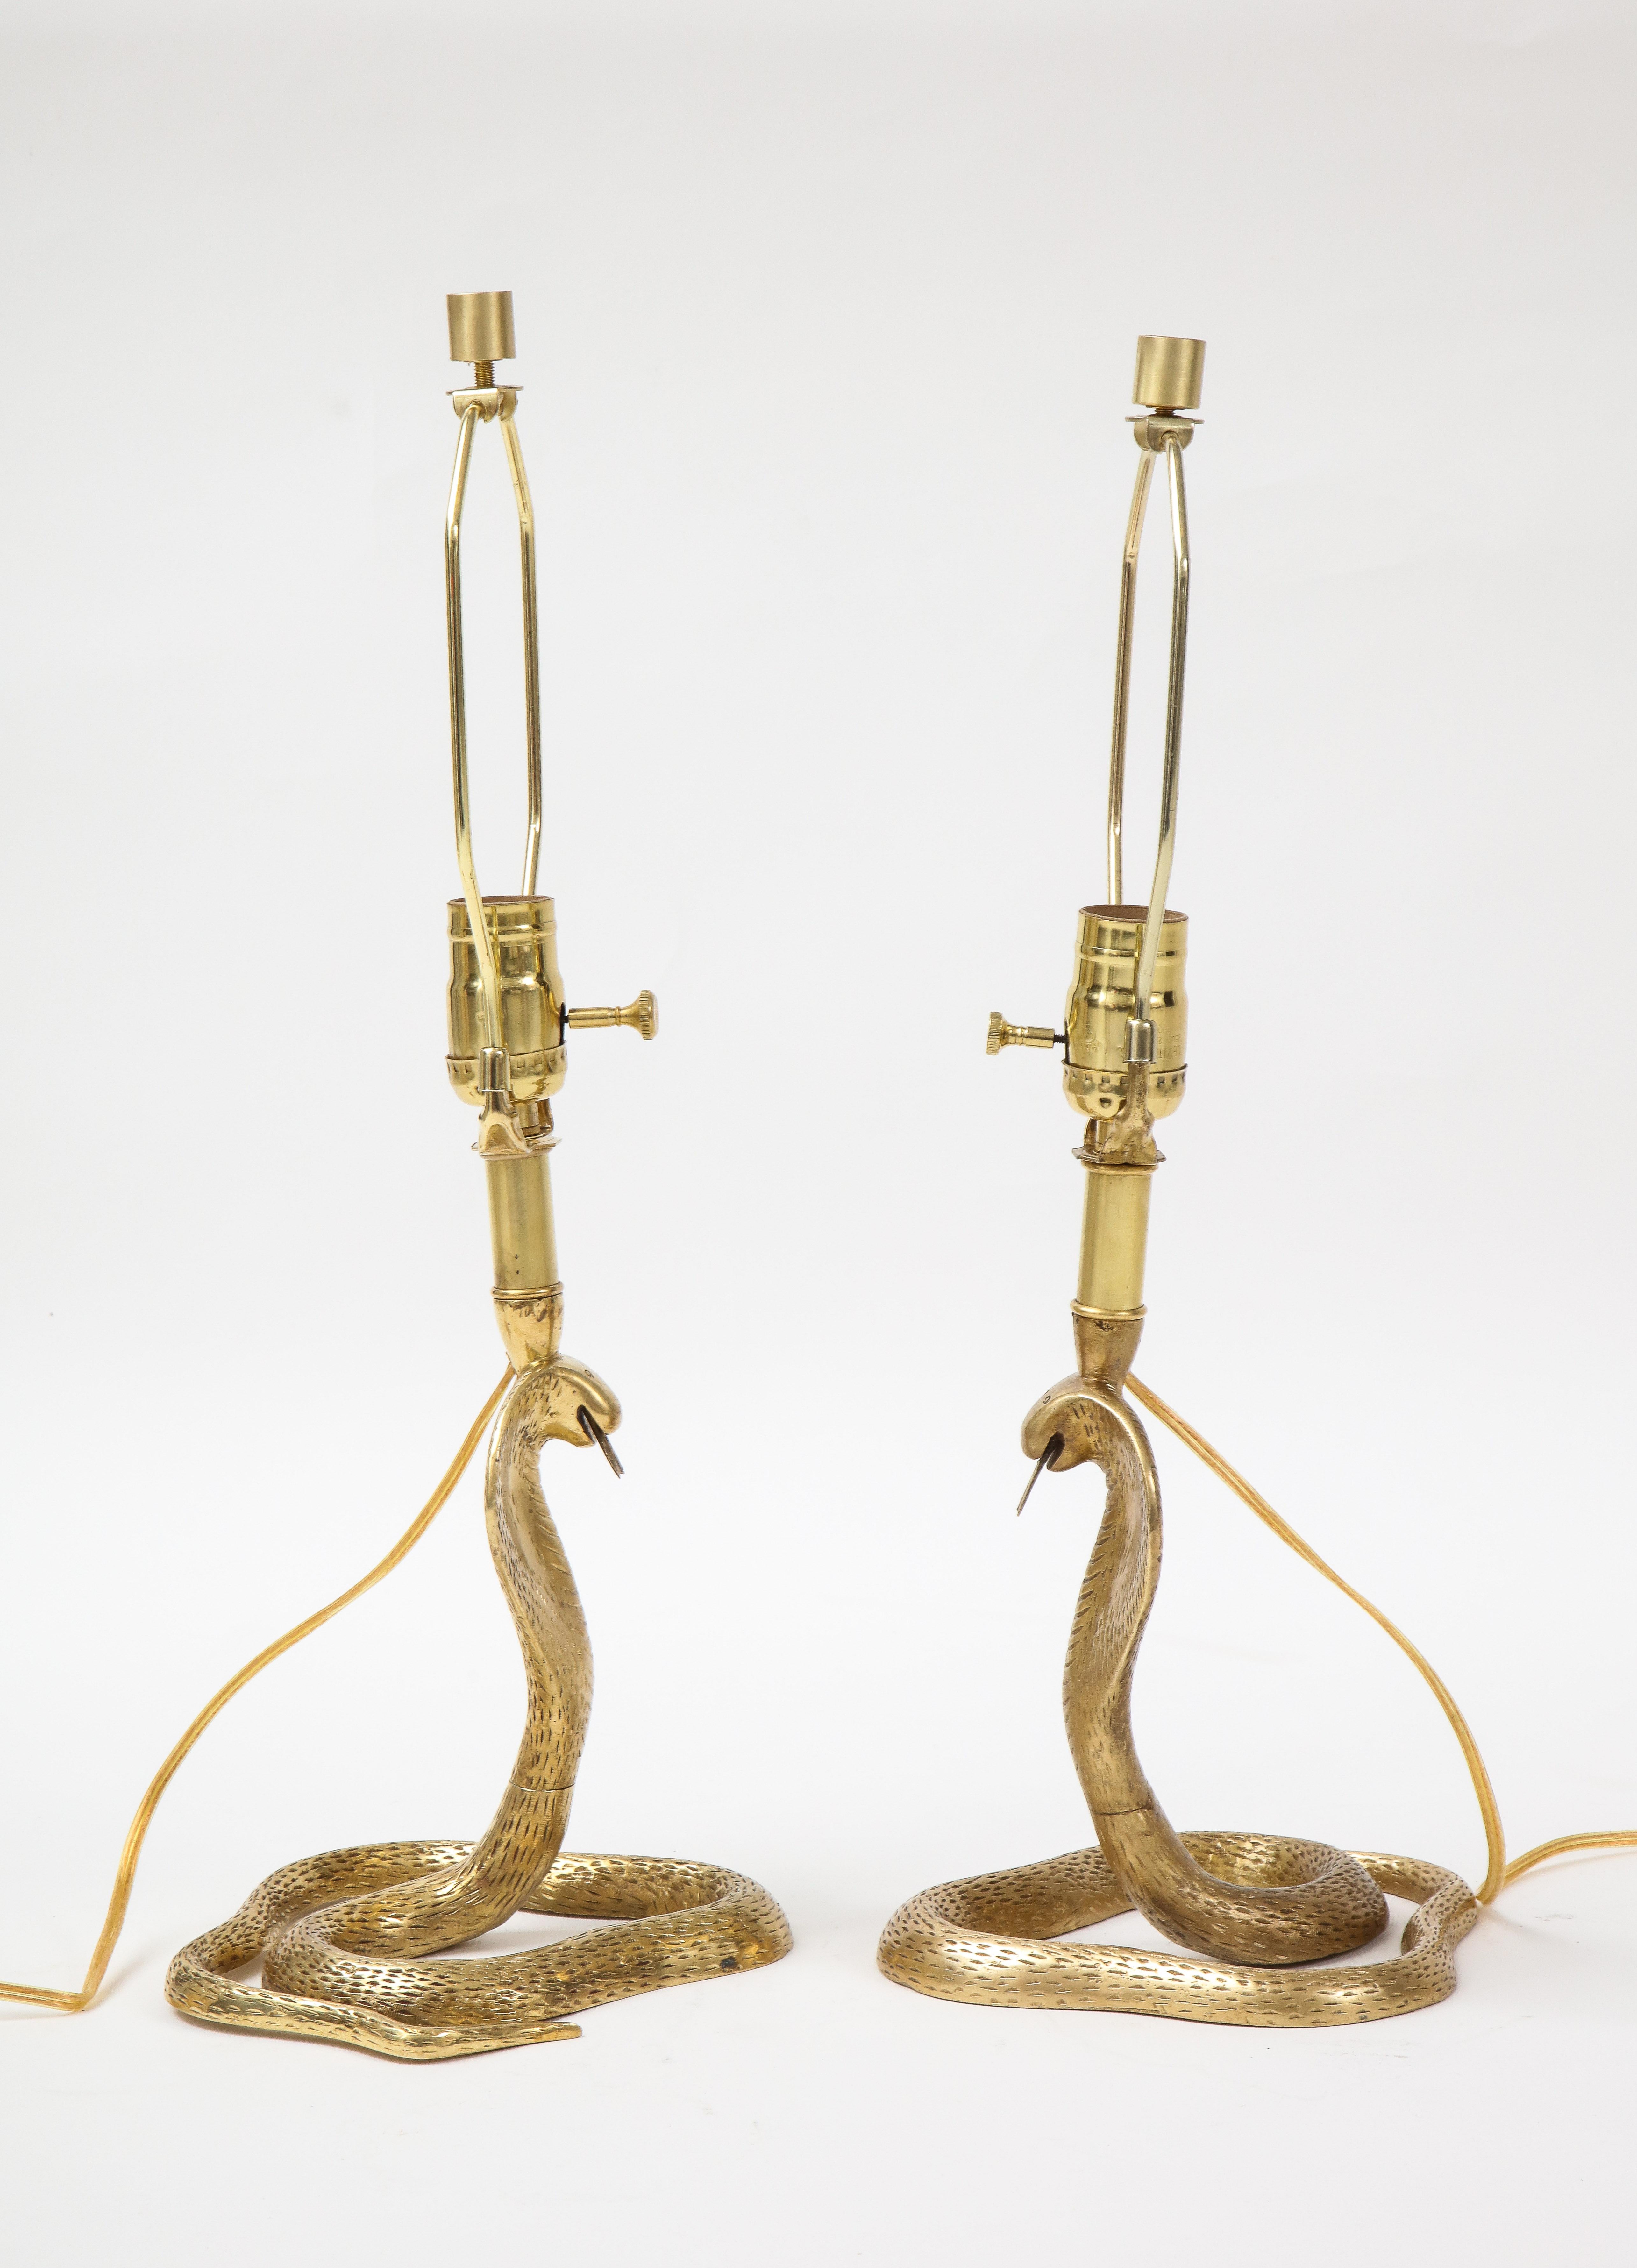 Paire détaillée de lampes serpent cobra en laiton coulé, finies à la main, dans le style de la Maison Jansen. Recâblé pour une utilisation aux USA. ampoule de 100W max.